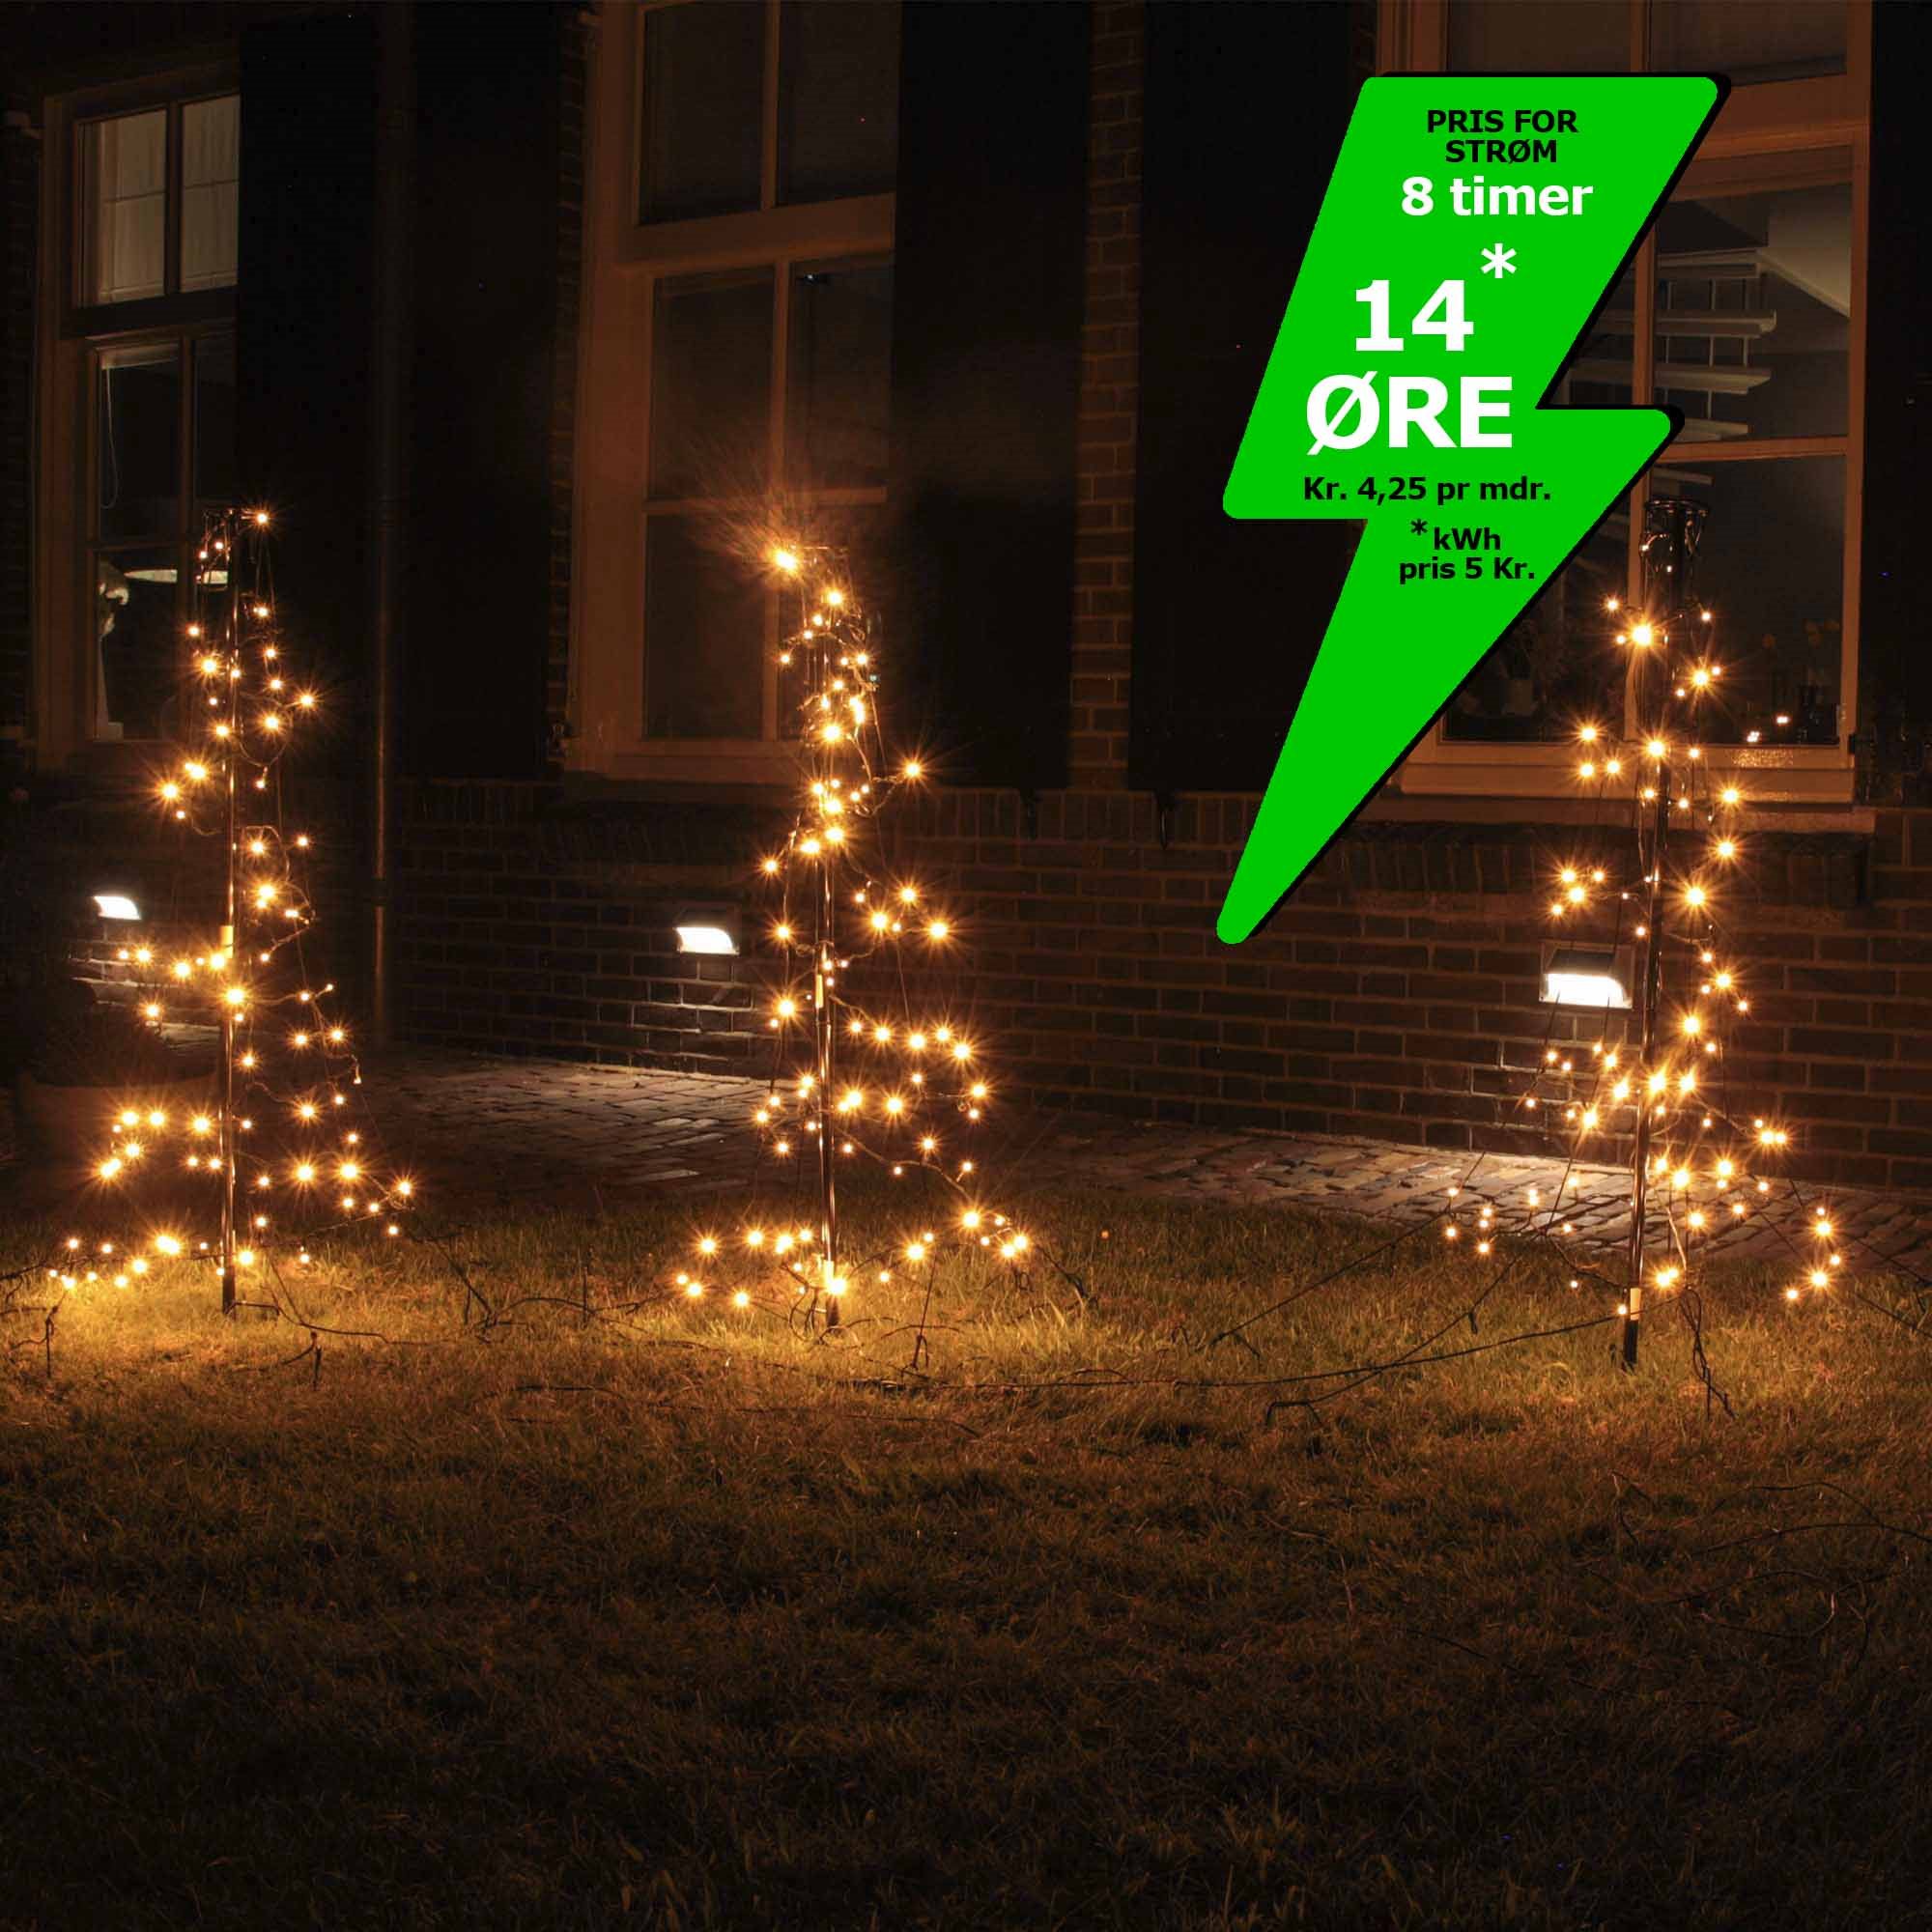 fiktiv Lighed Sammenlignelig 3 stk. LED juletræer på 1 meter med 240 LED'er i varm hvid, inklusiv stænger,  pløkker og timer